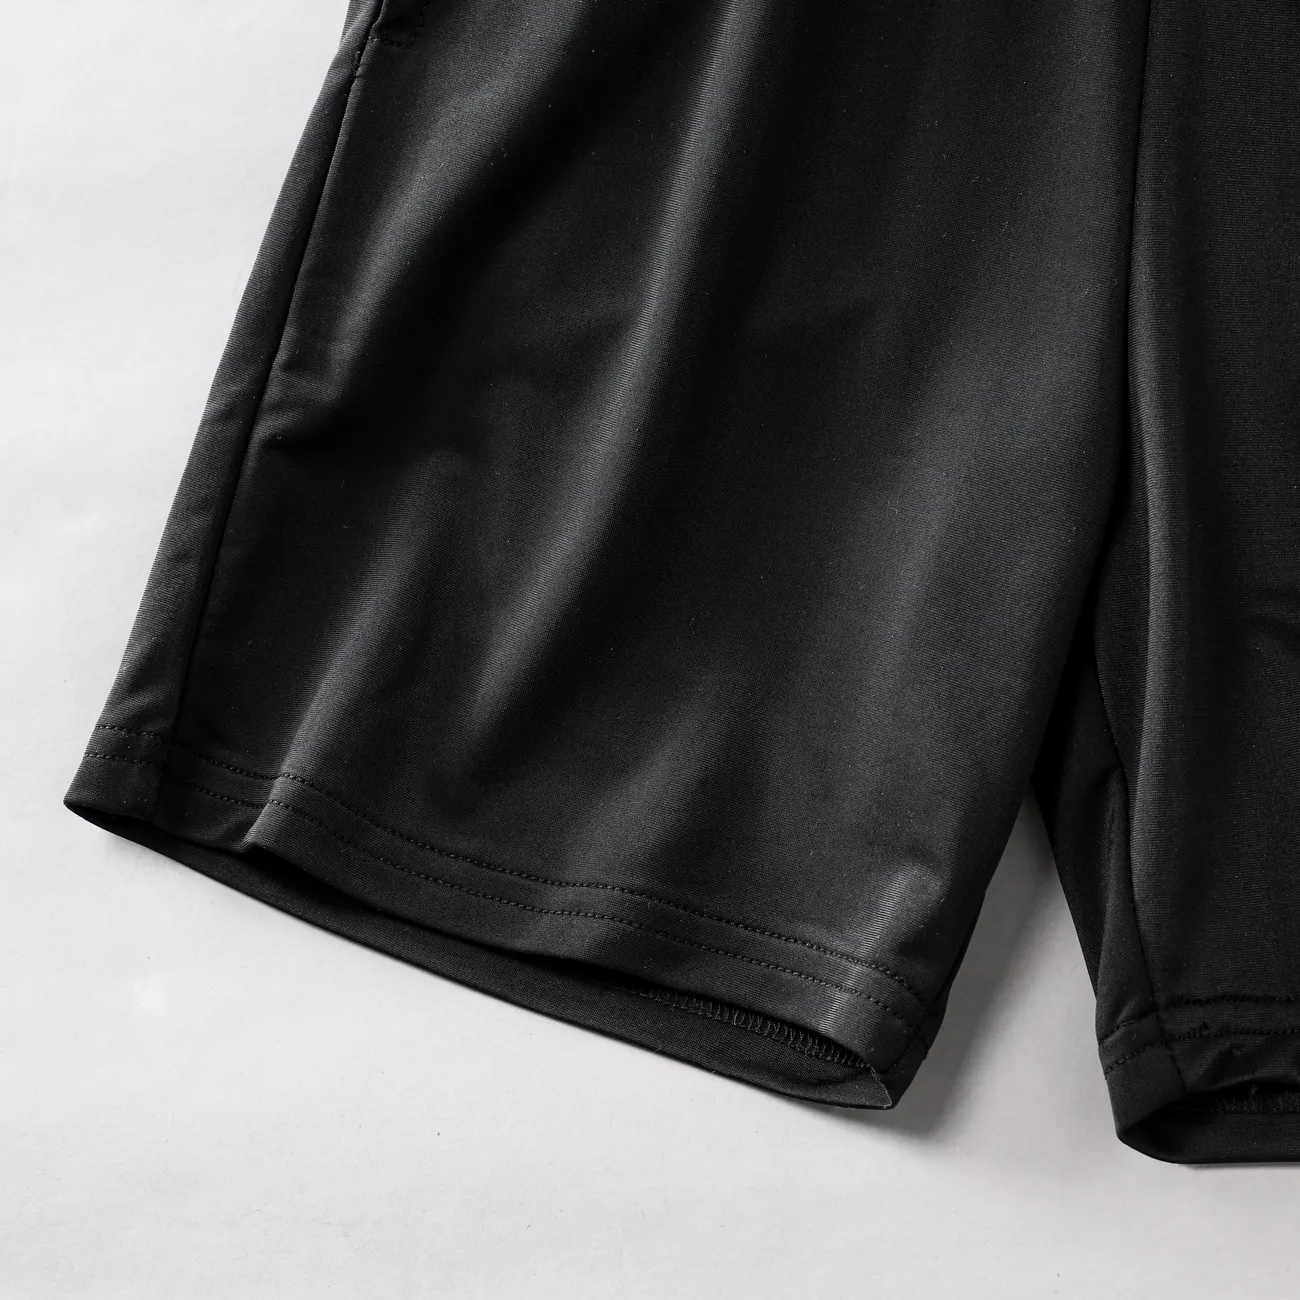 Pantalones cortos frescos de verano para niños, material de seda de hielo al 93% de poliéster Negro big image 1